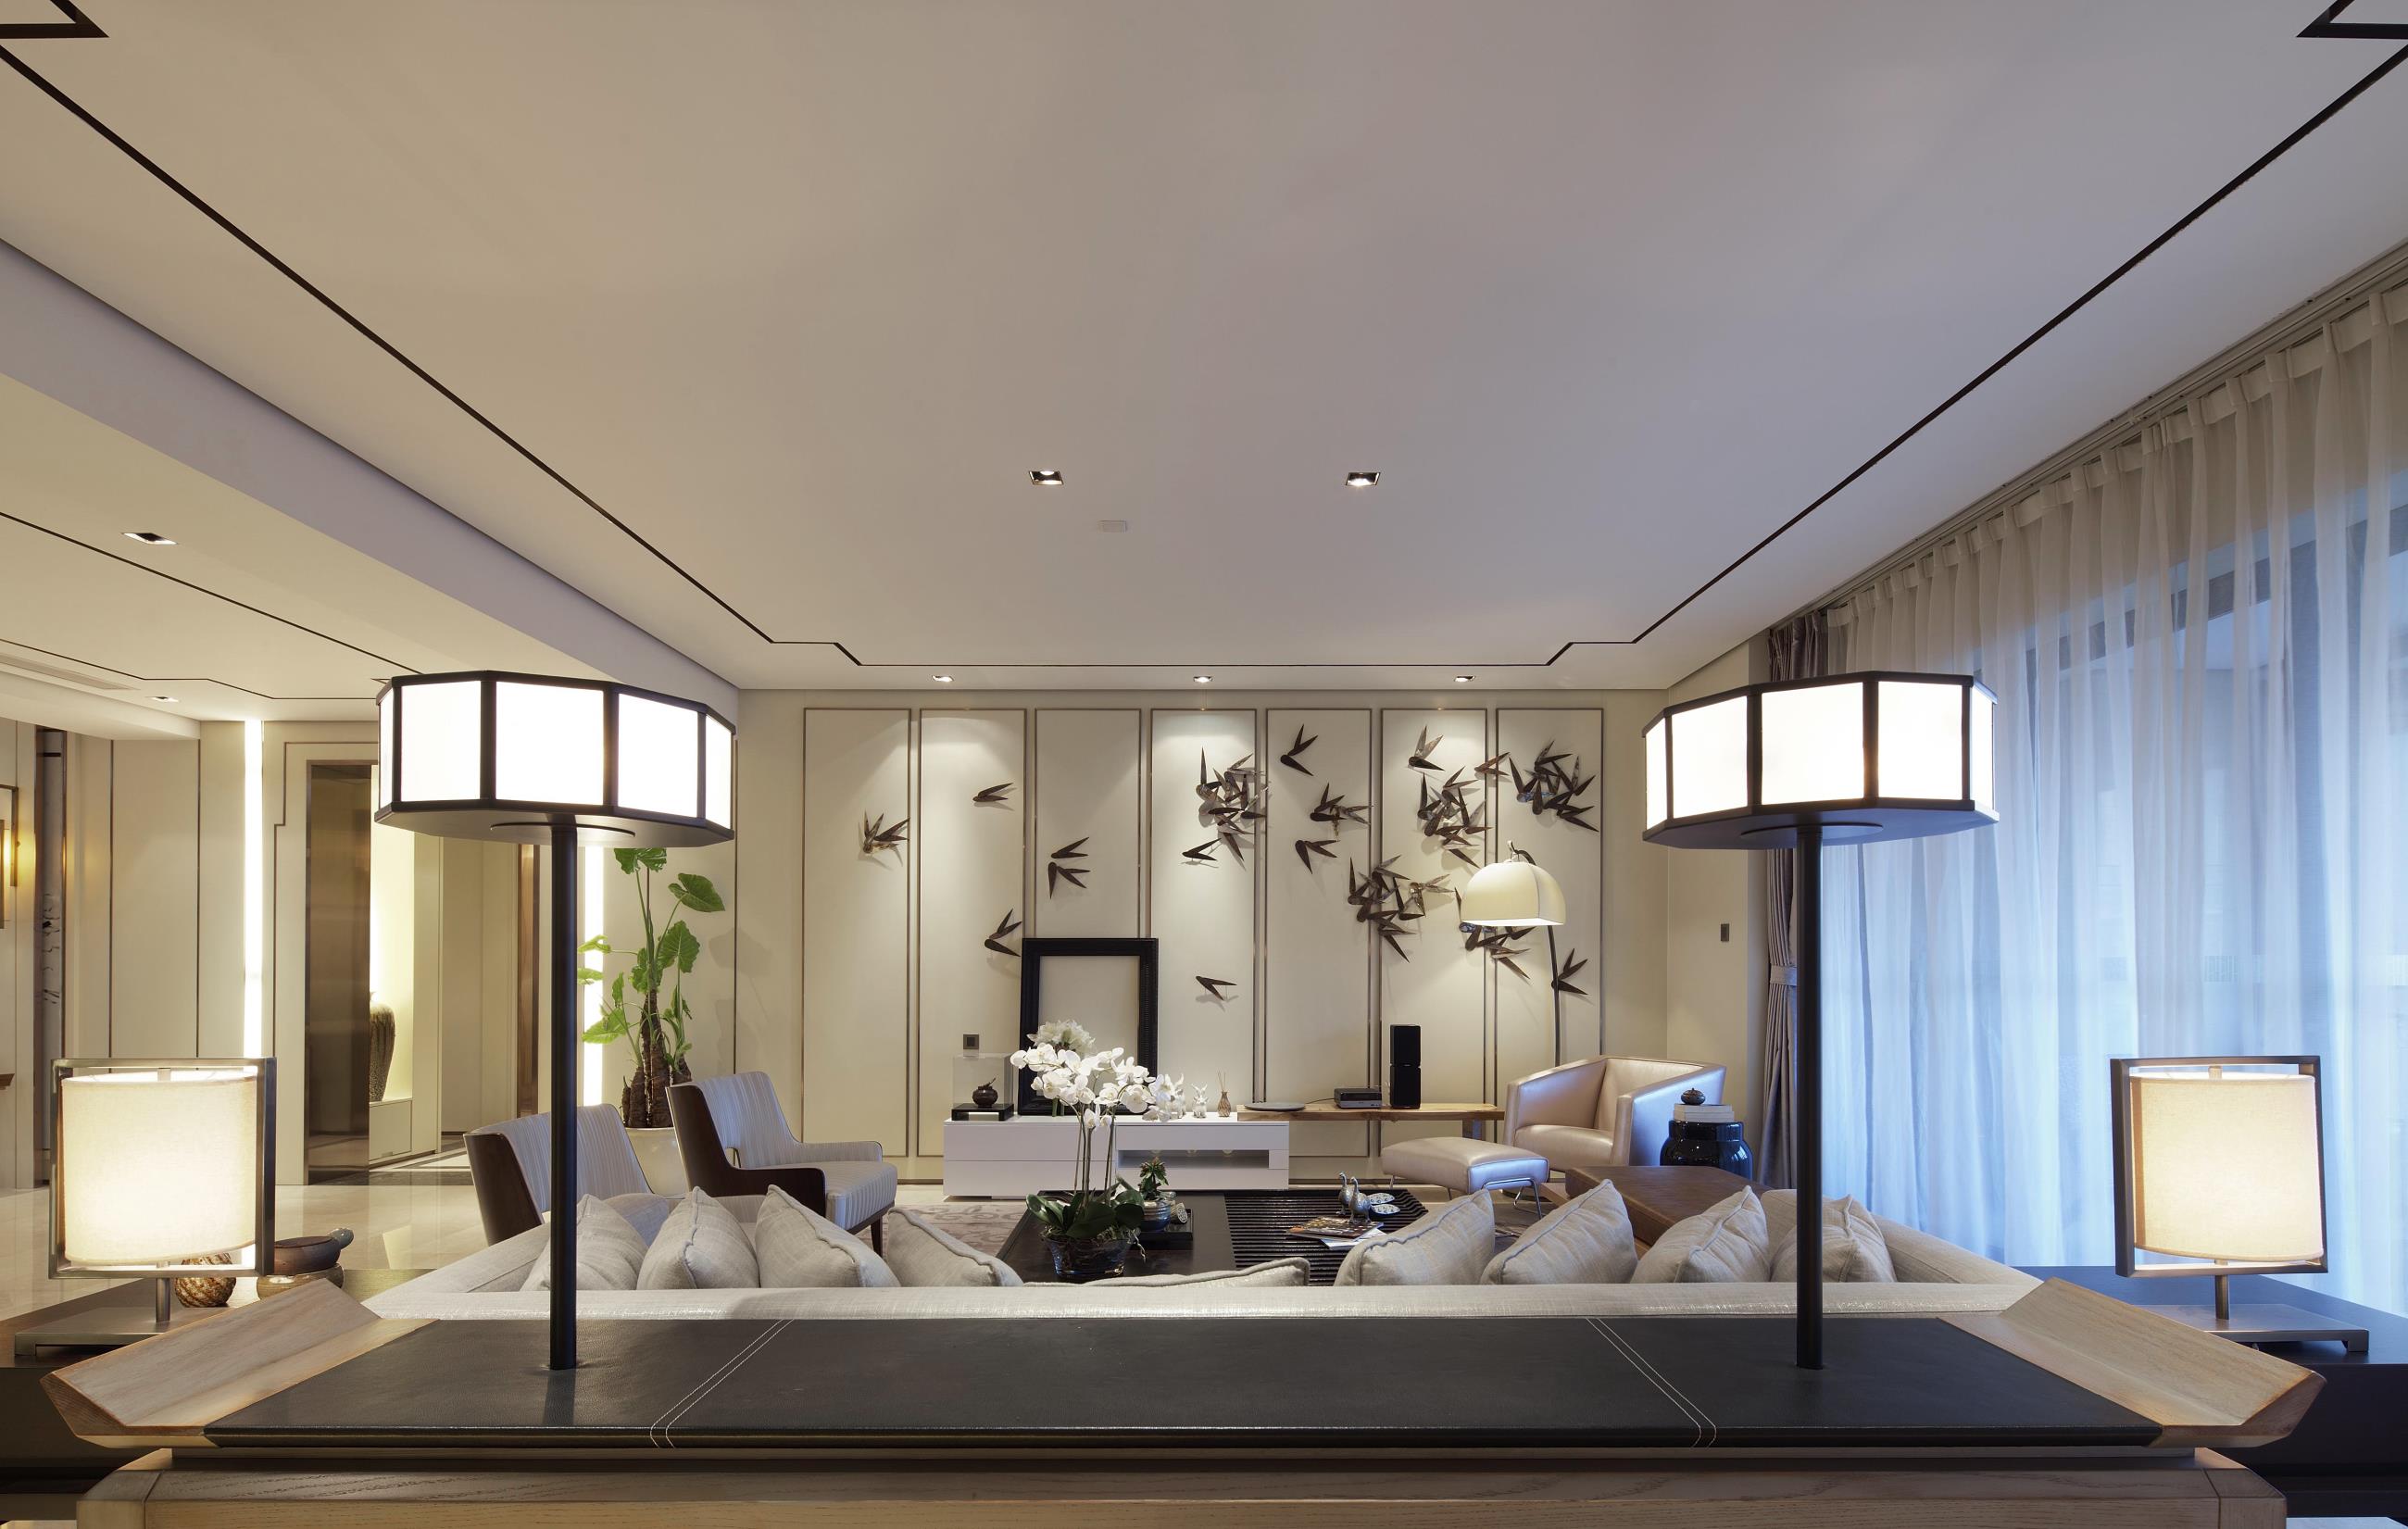 200平米中式风格客厅装修效果图